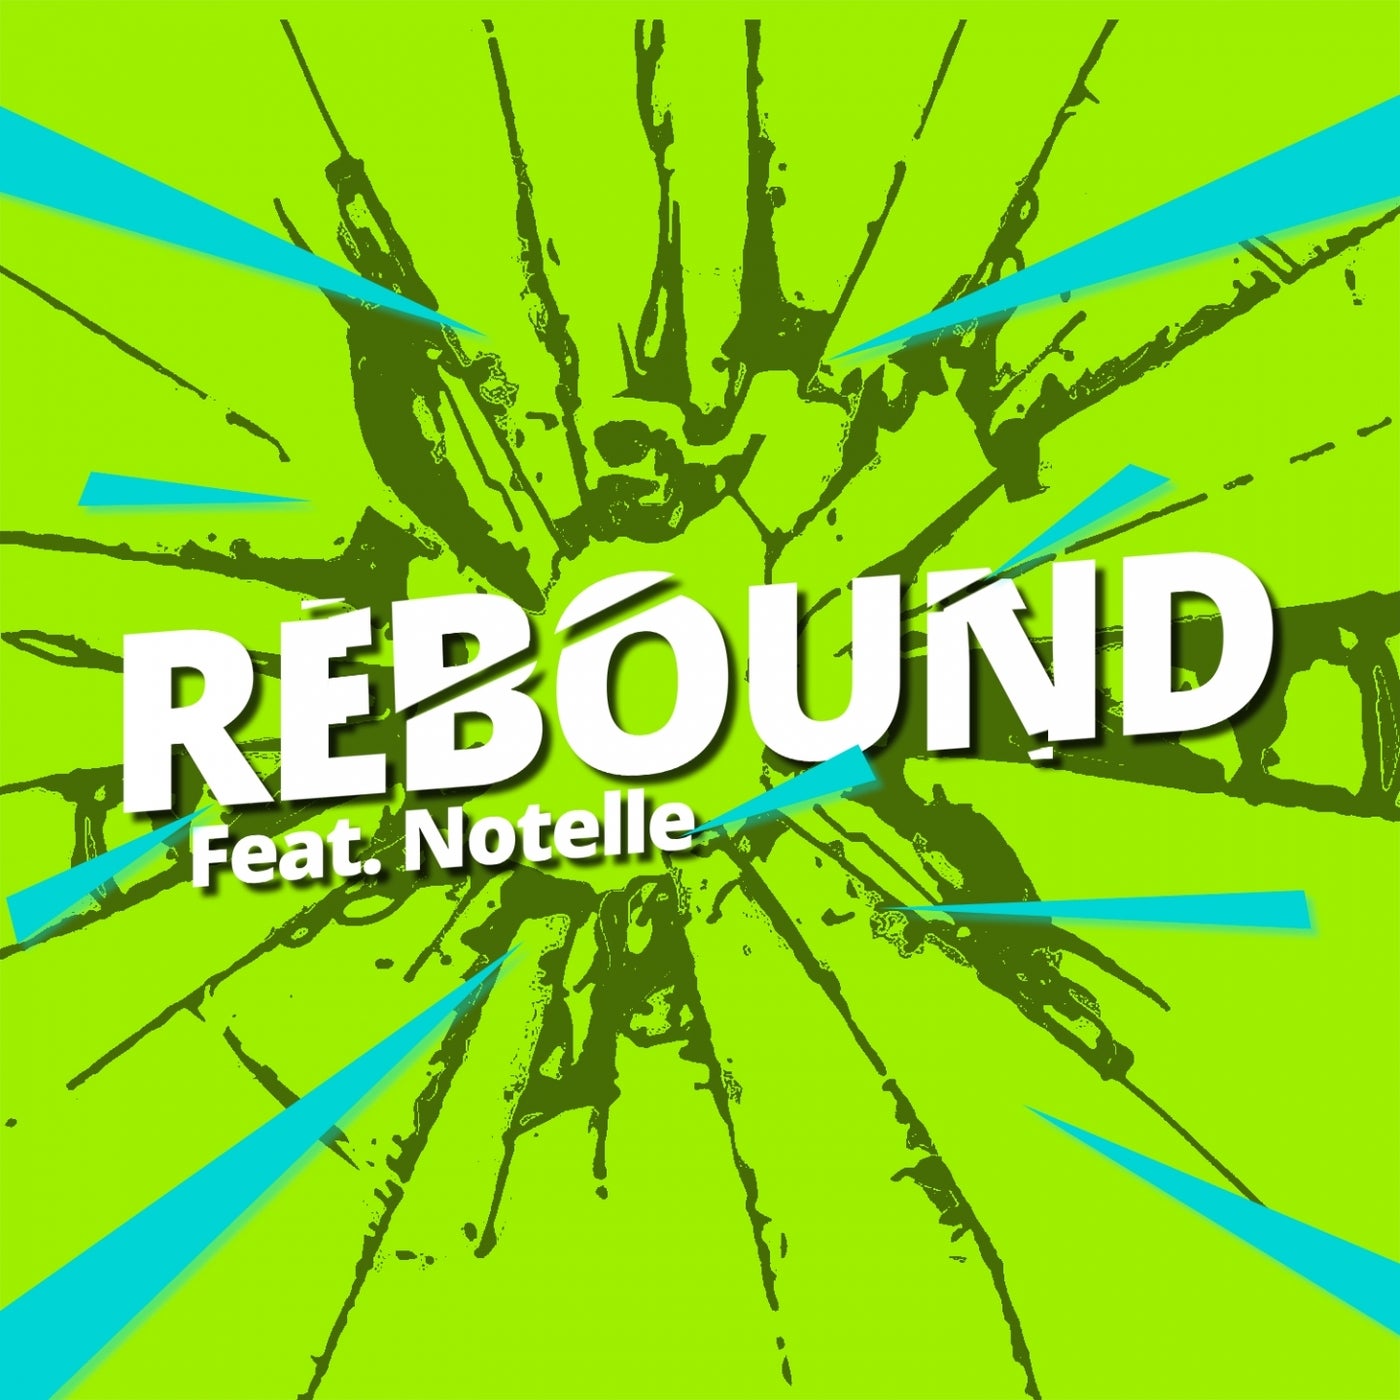 Rebound (feat. Notelle)